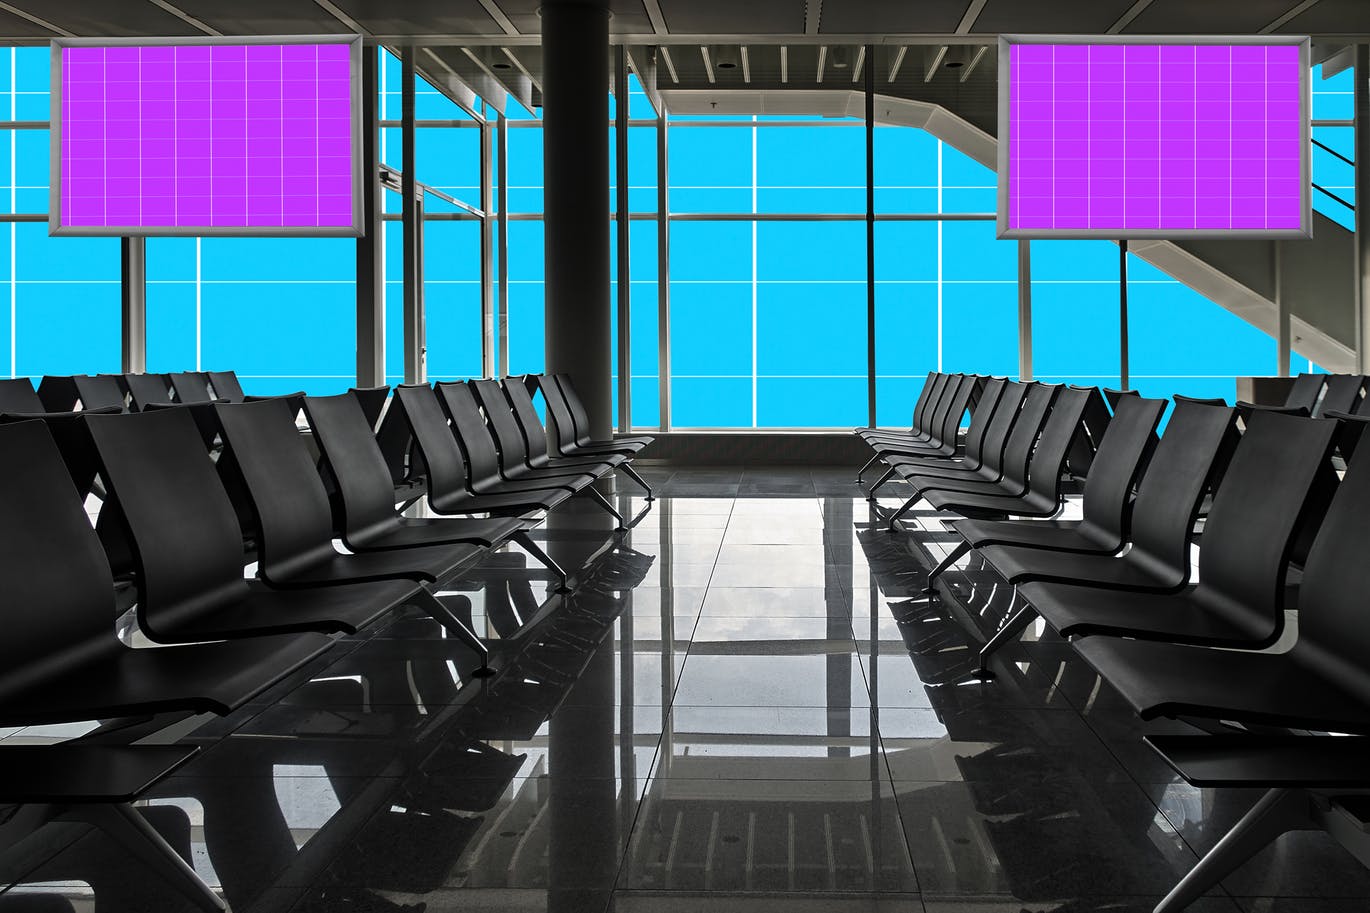 机场航站楼电视屏幕广告设计效果图样机16图库精选v01 Airport_Terminal-01插图